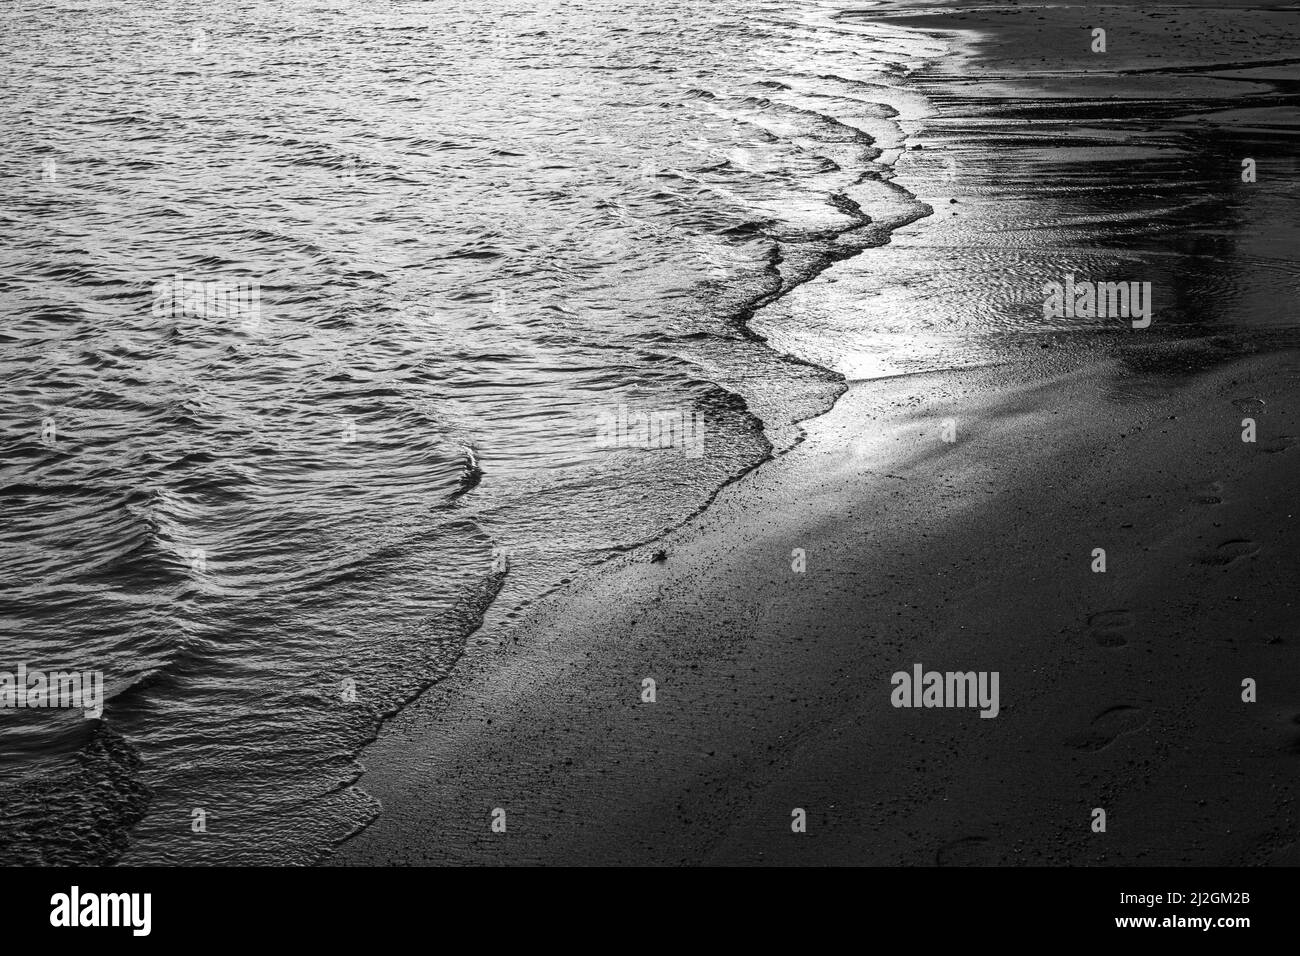 Vague d'eau de mer sur le sable. Arrière-plan noir et blanc du fluide en mouvement. Problèmes écologiques. Banque D'Images